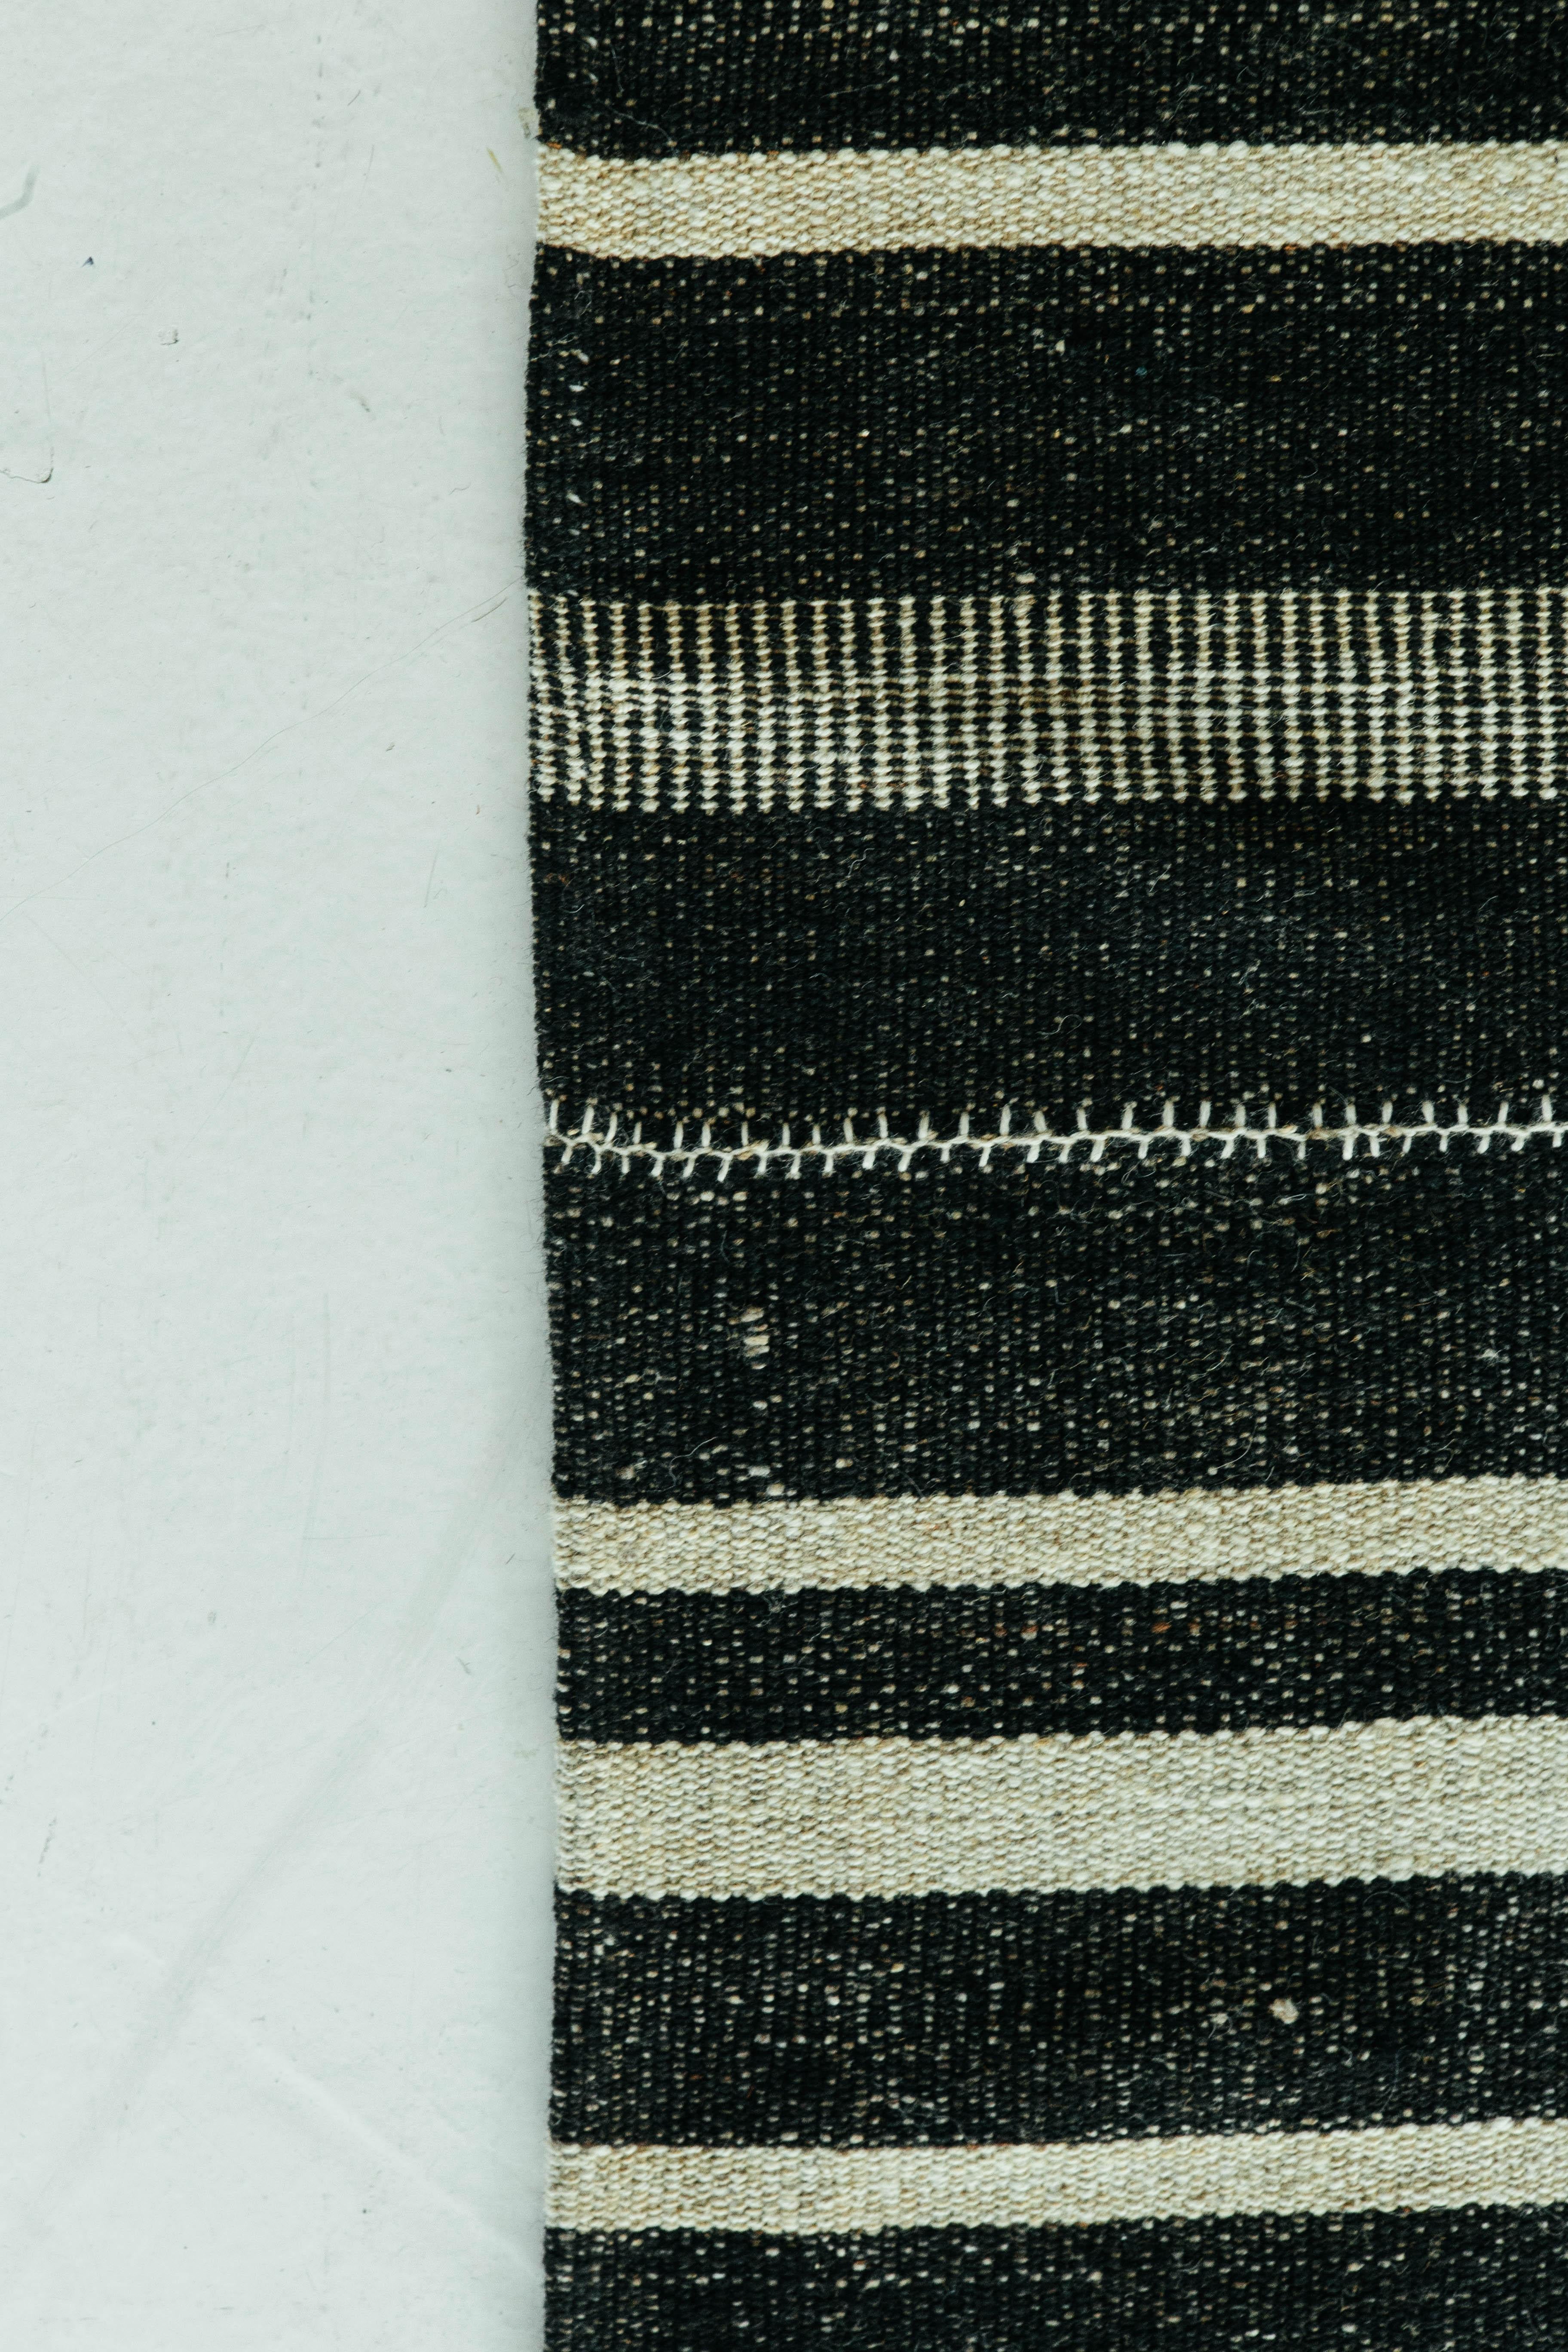 Dieser persische Jejim-Kilim ist ein gebändertes Flachgewebe mit abwechselnd schwarzen und elfenbeinfarbenen Streifen in verschiedenen Größen und Ausführungen. Persische Flachgewebe bestehen aus der besten Wolle und werden auf außergewöhnliche Weise